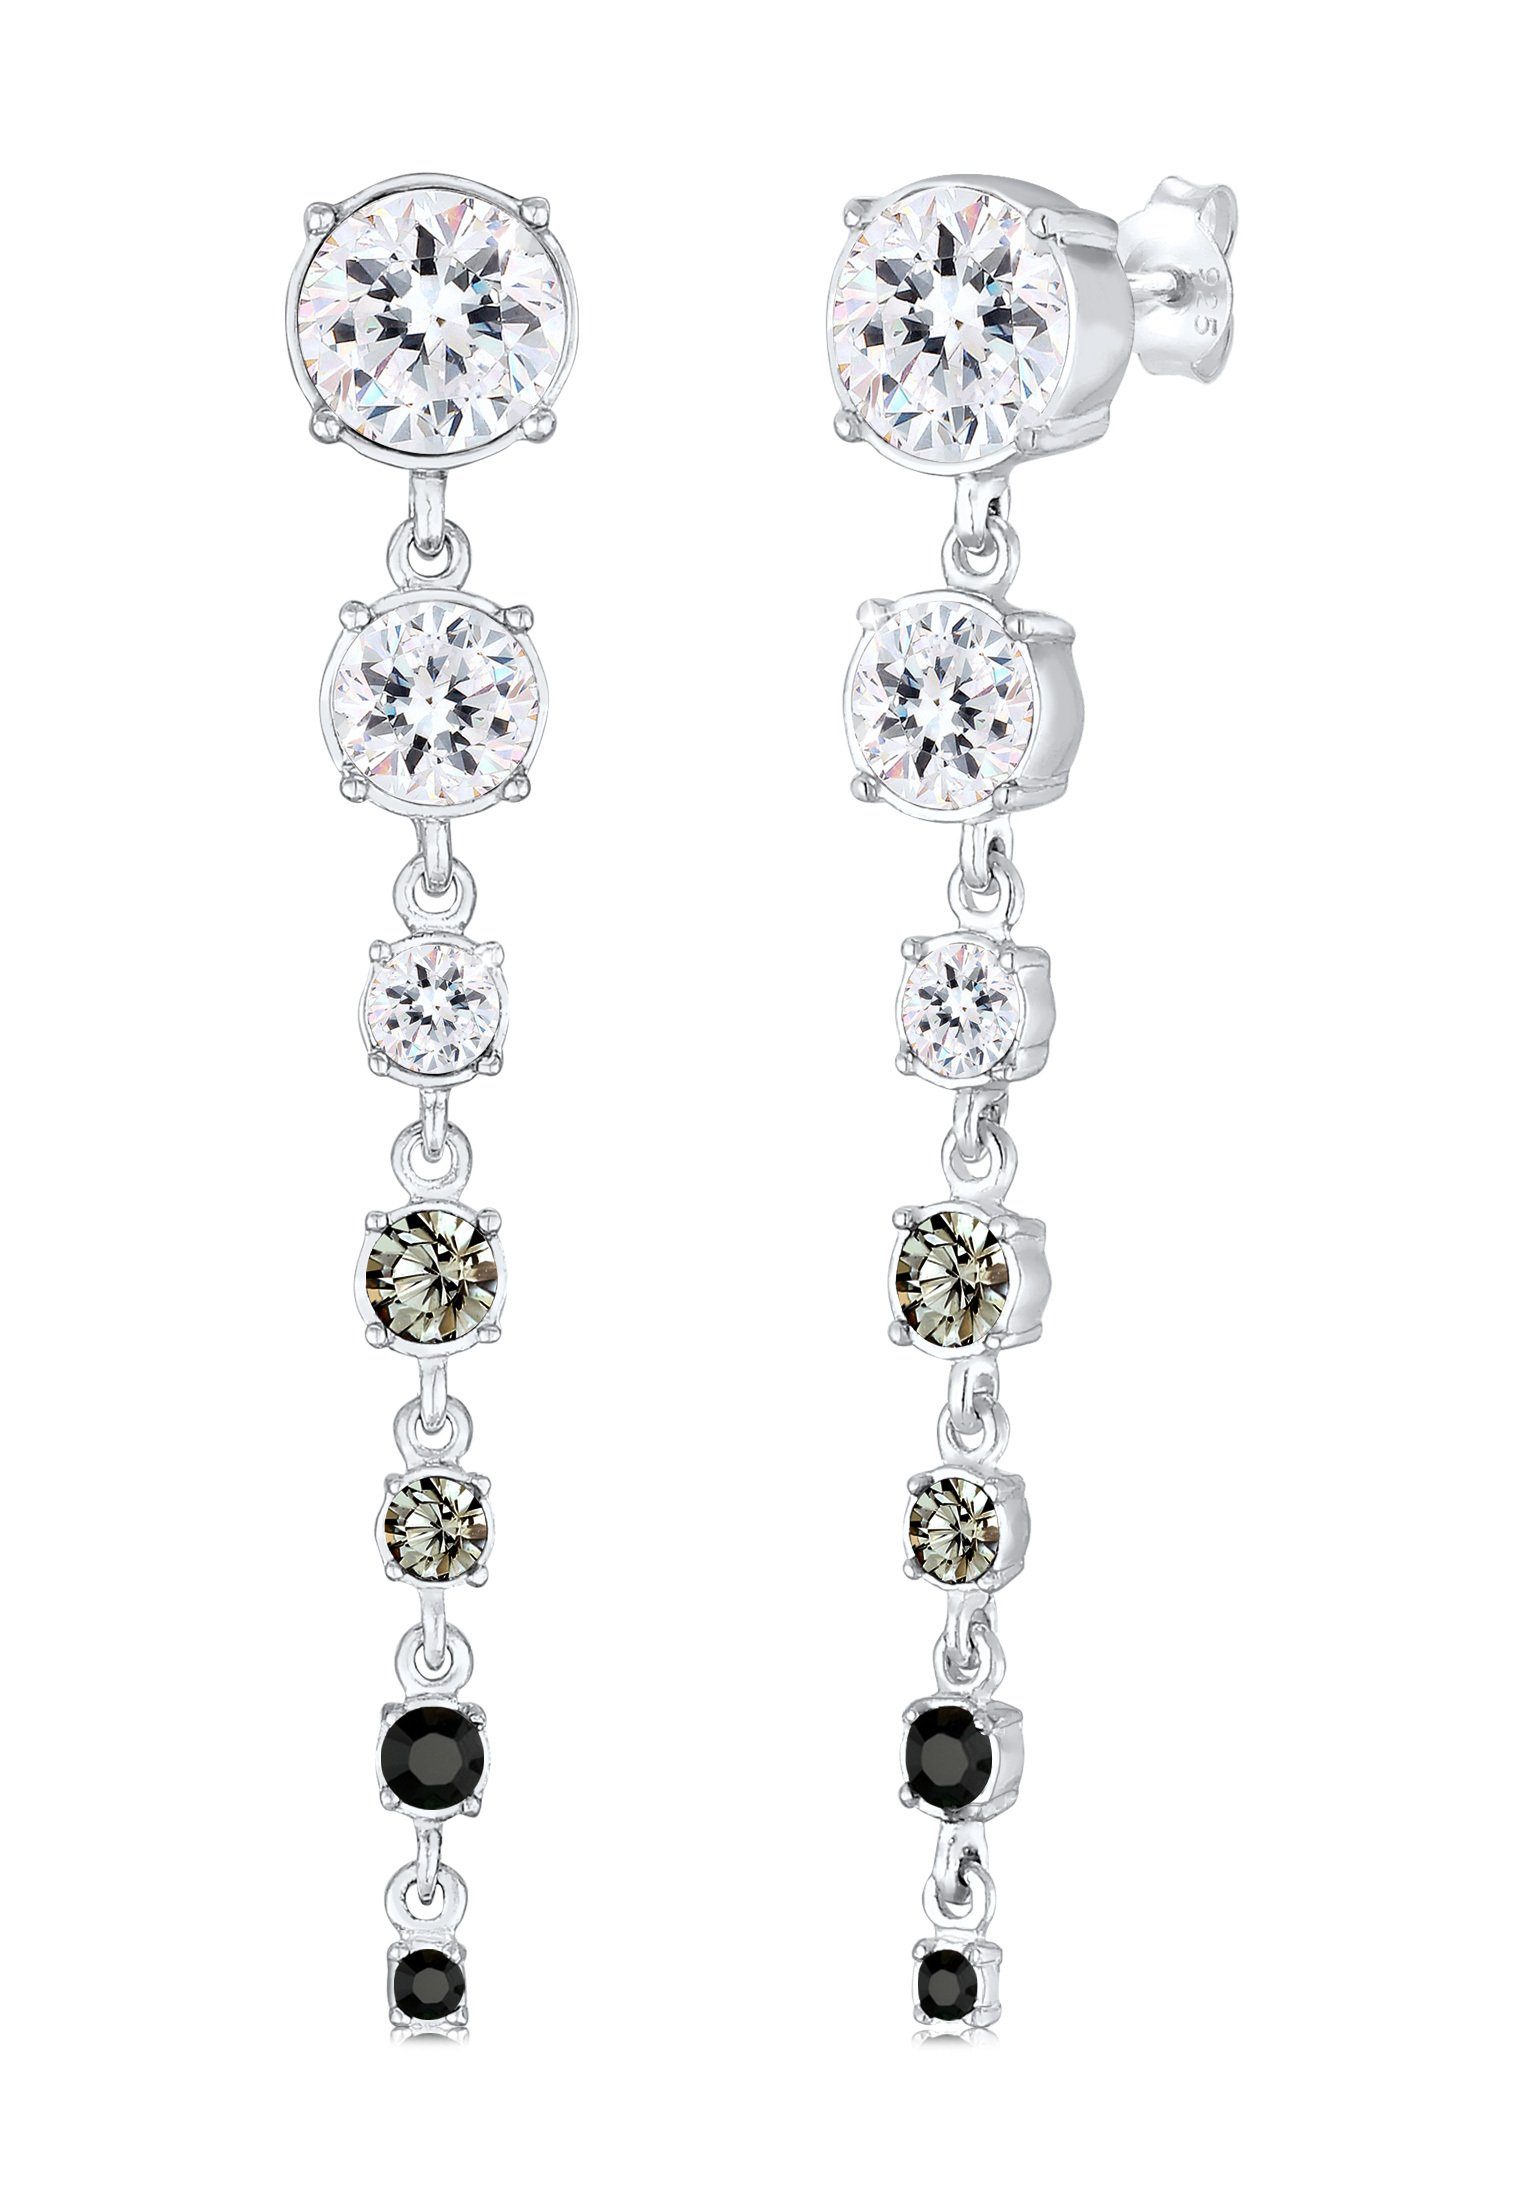 Paar Silber Kristalle Ohrhänger Ohrhänger Premium Elli Grau 925